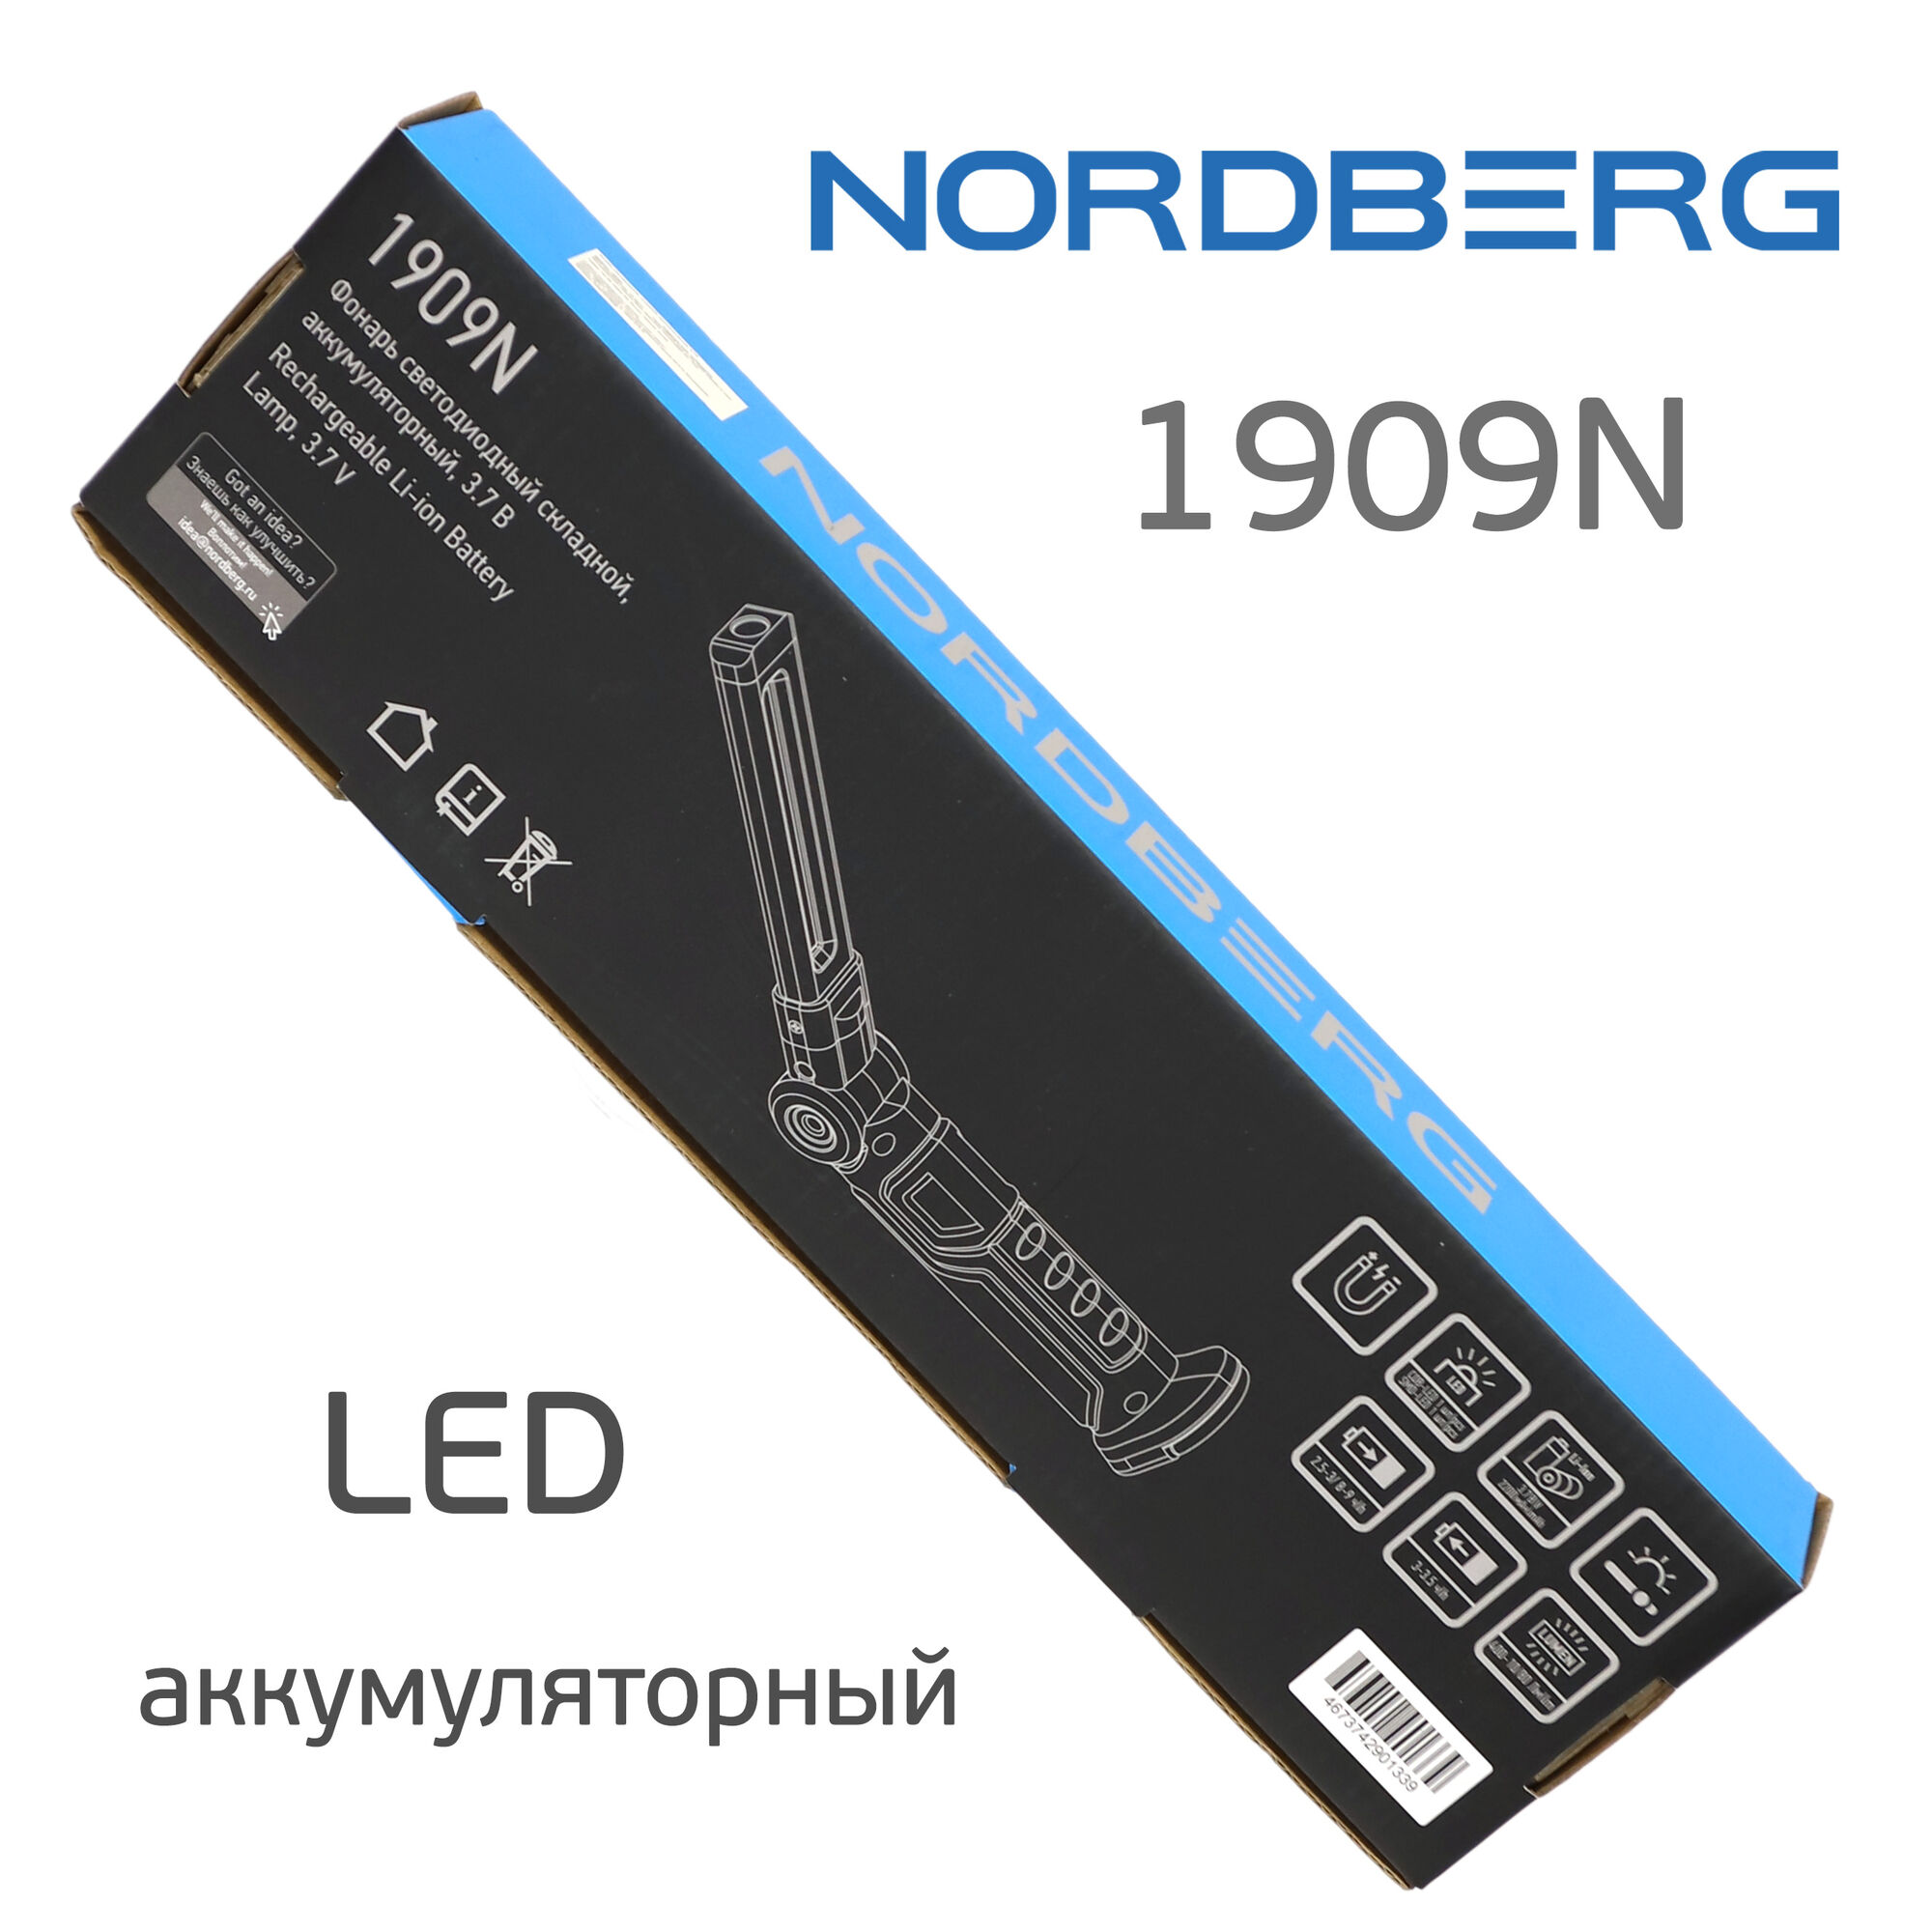 Фонарь светодиодный Nordberg 1909N (LED) аккумуляторный складной с магнитом и подвесом 5